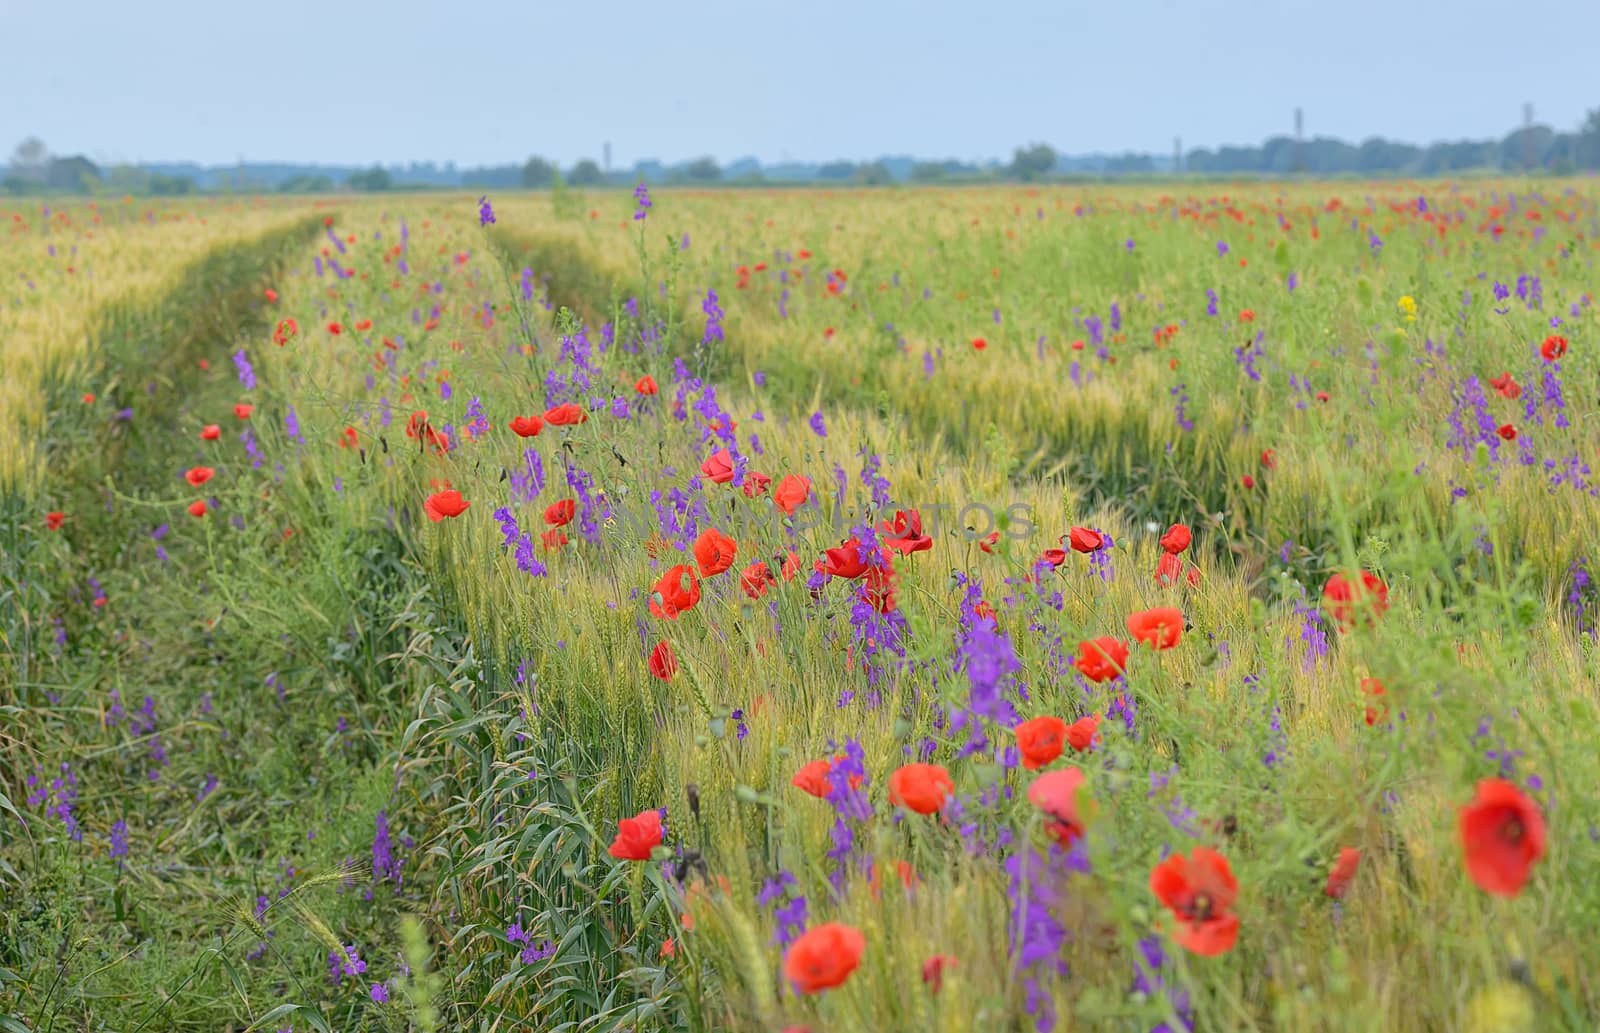 Poppy field in summer by jordachelr